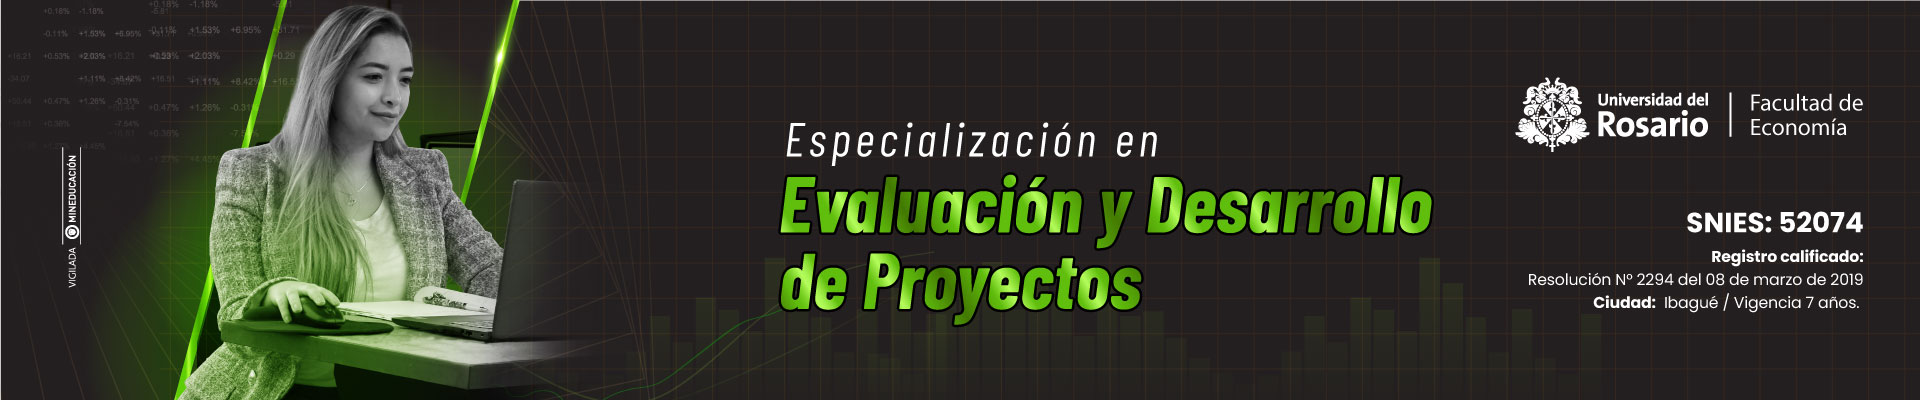 Imagen de cabecera para la especialización en Evaluación y Desarrollo de Proyectos de la Universidad de Ibagué